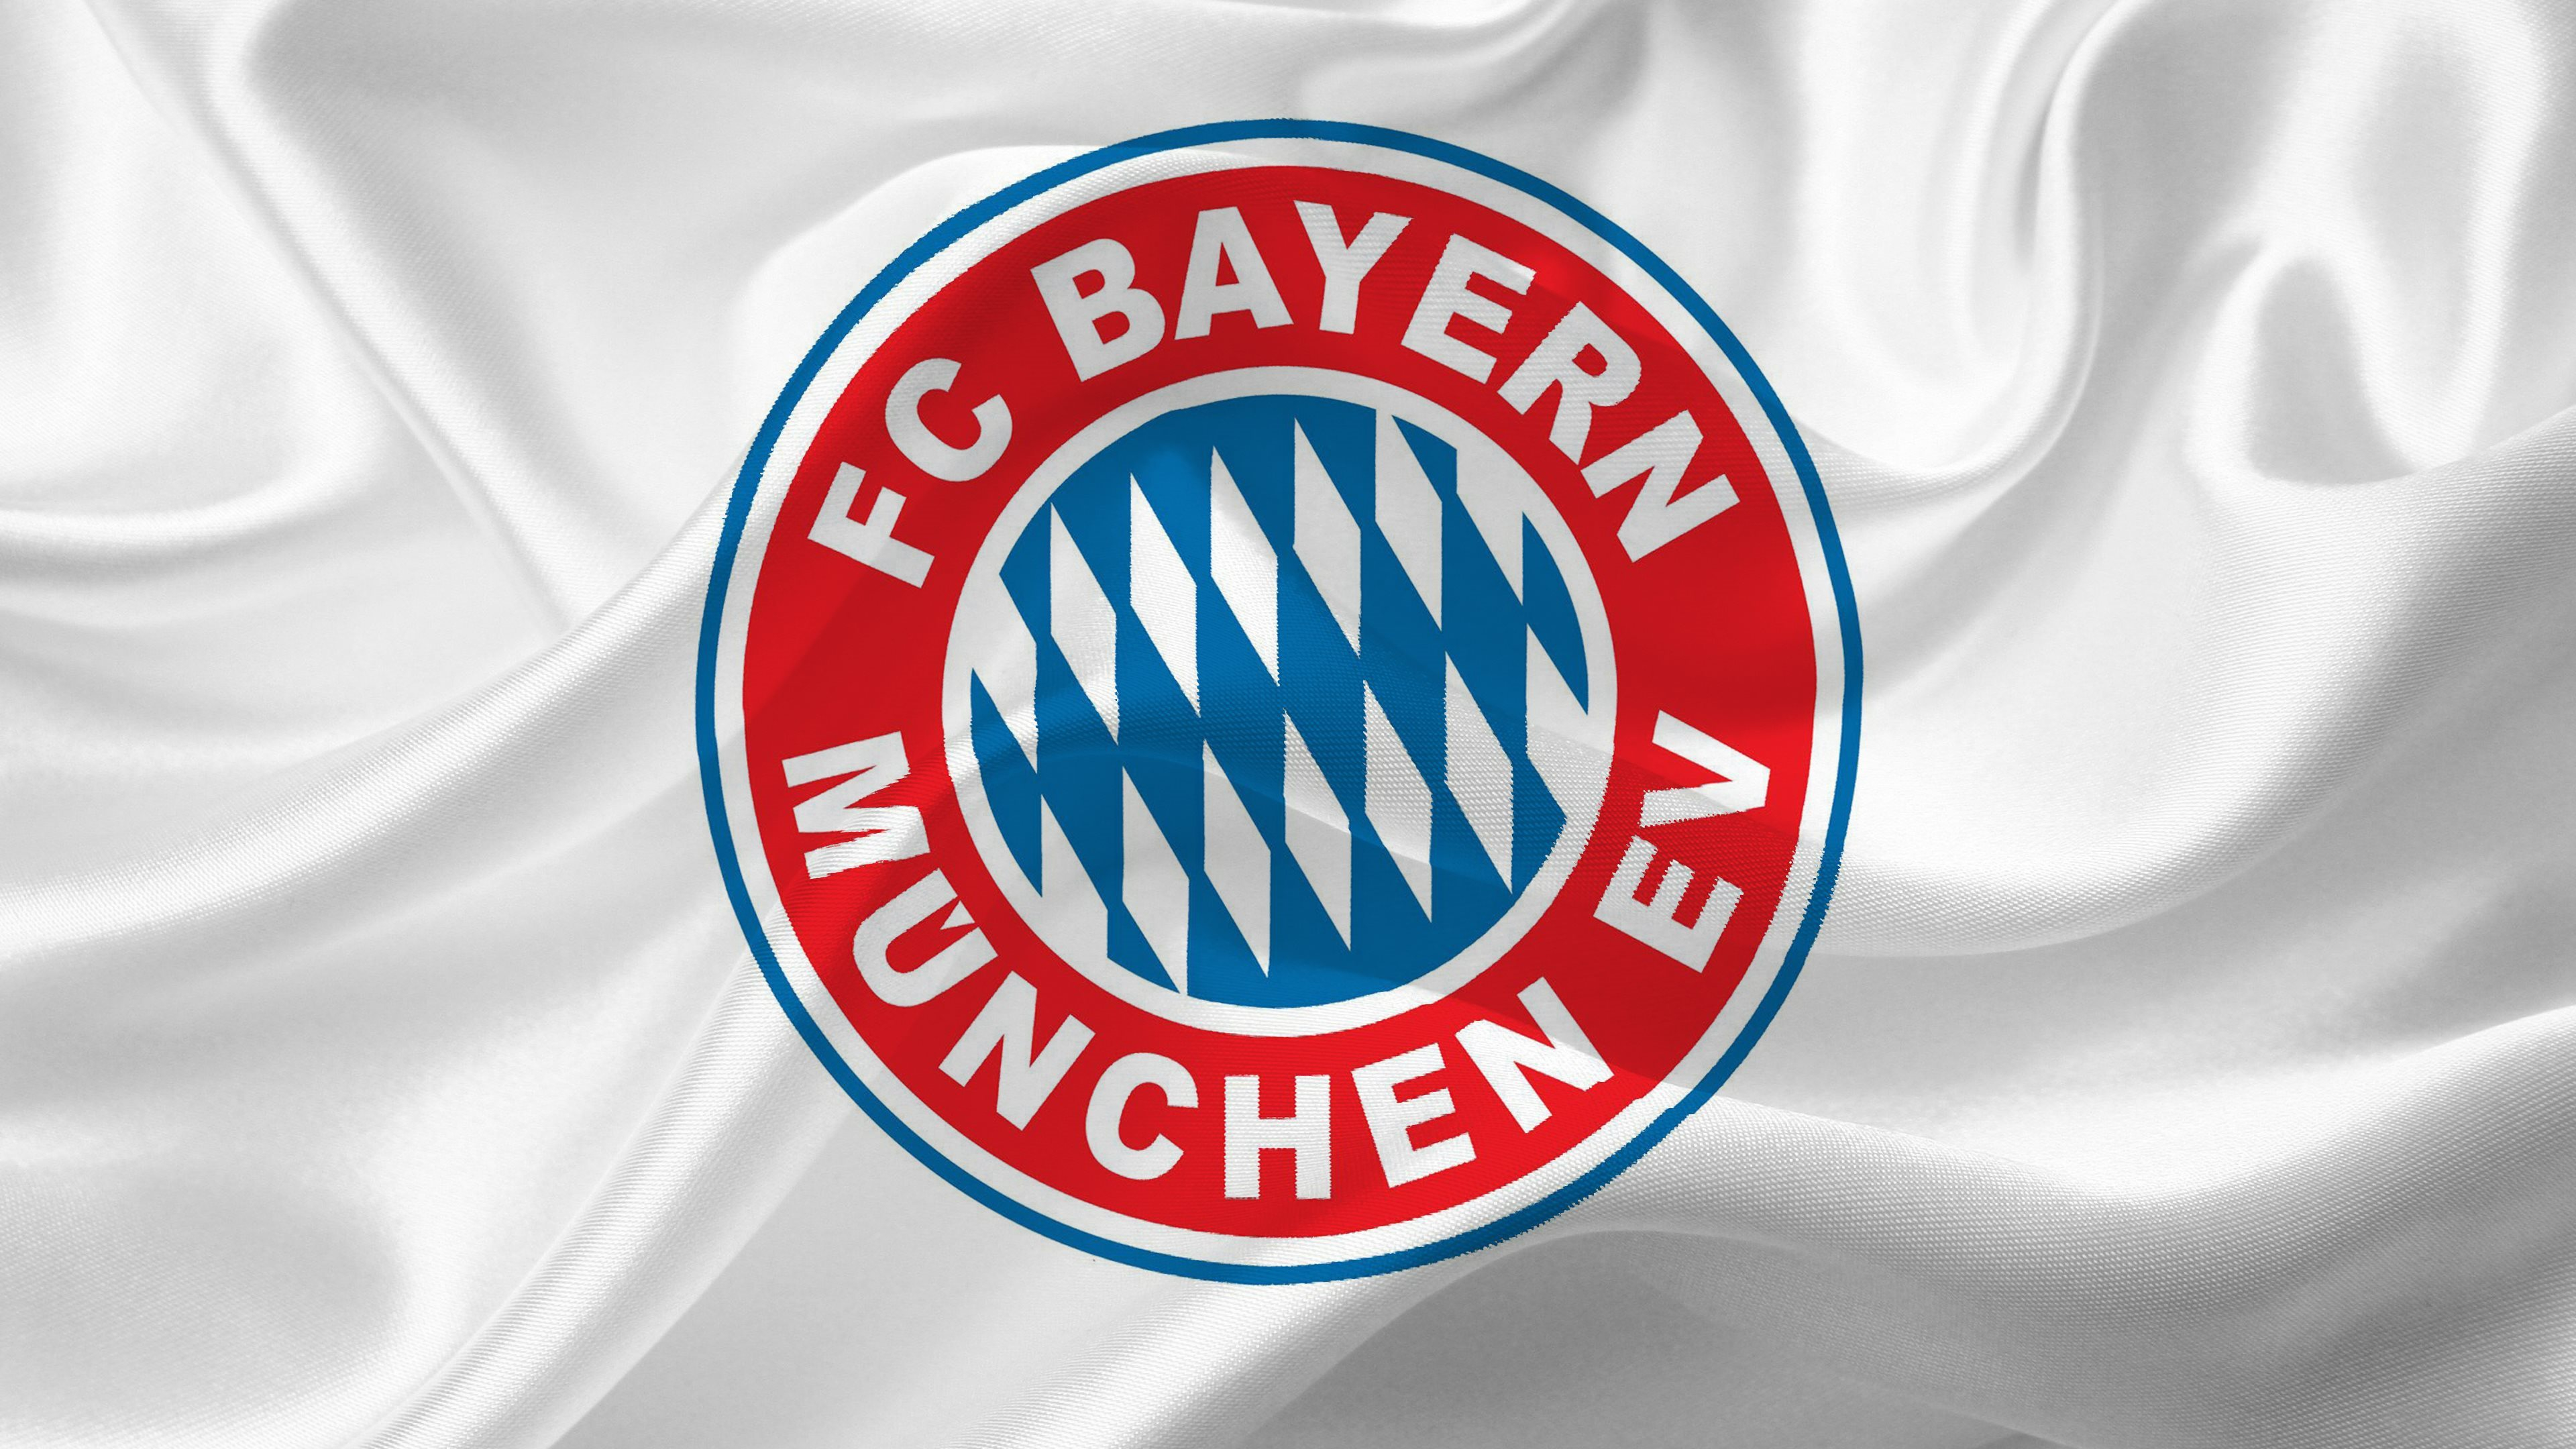 Bayern Munich , HD Wallpaper & Backgrounds